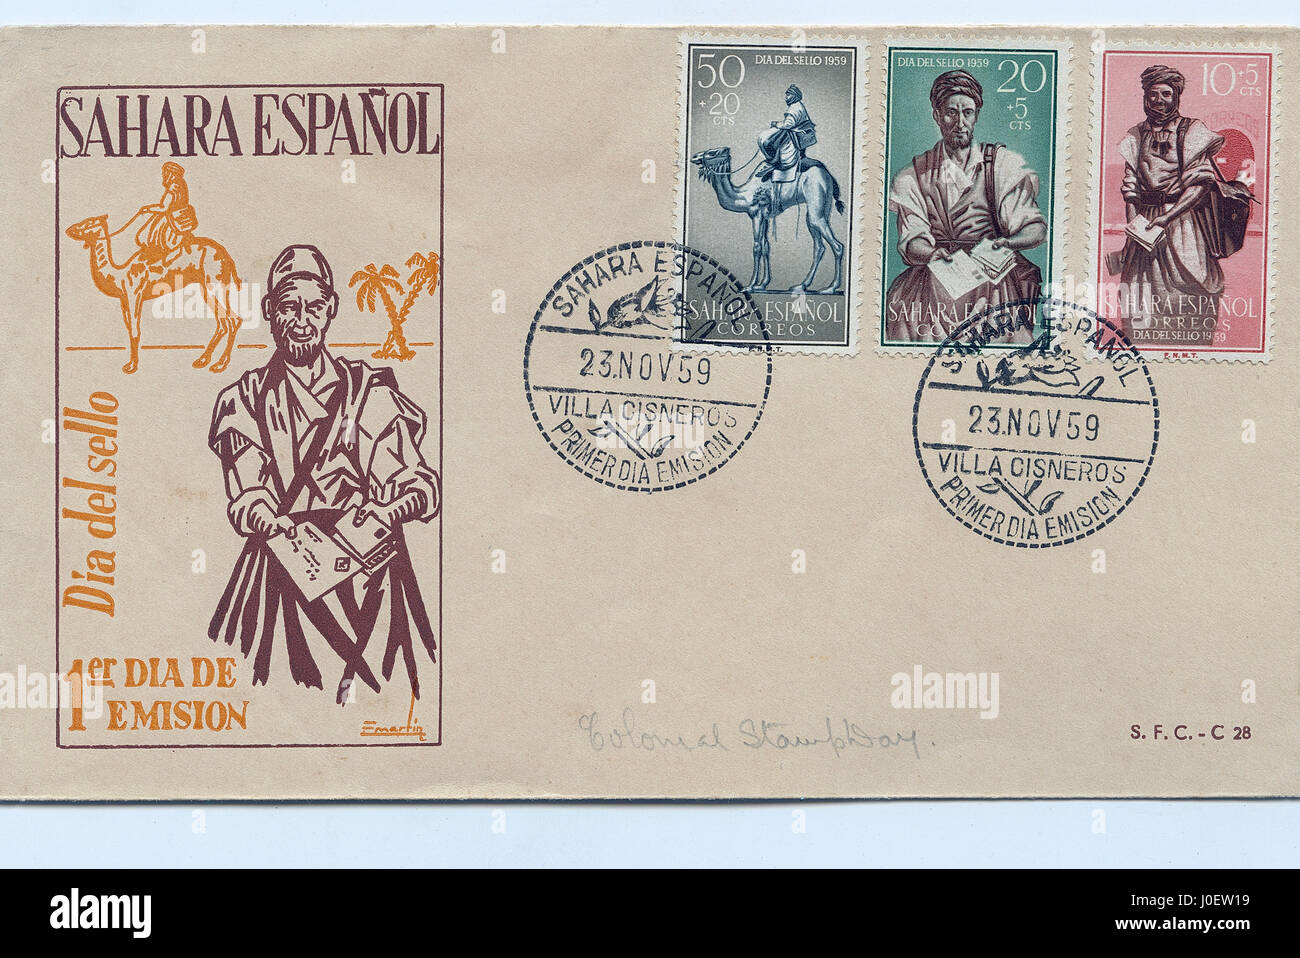 Enveloppe premier jour de sahara espanol, timbres Banque D'Images